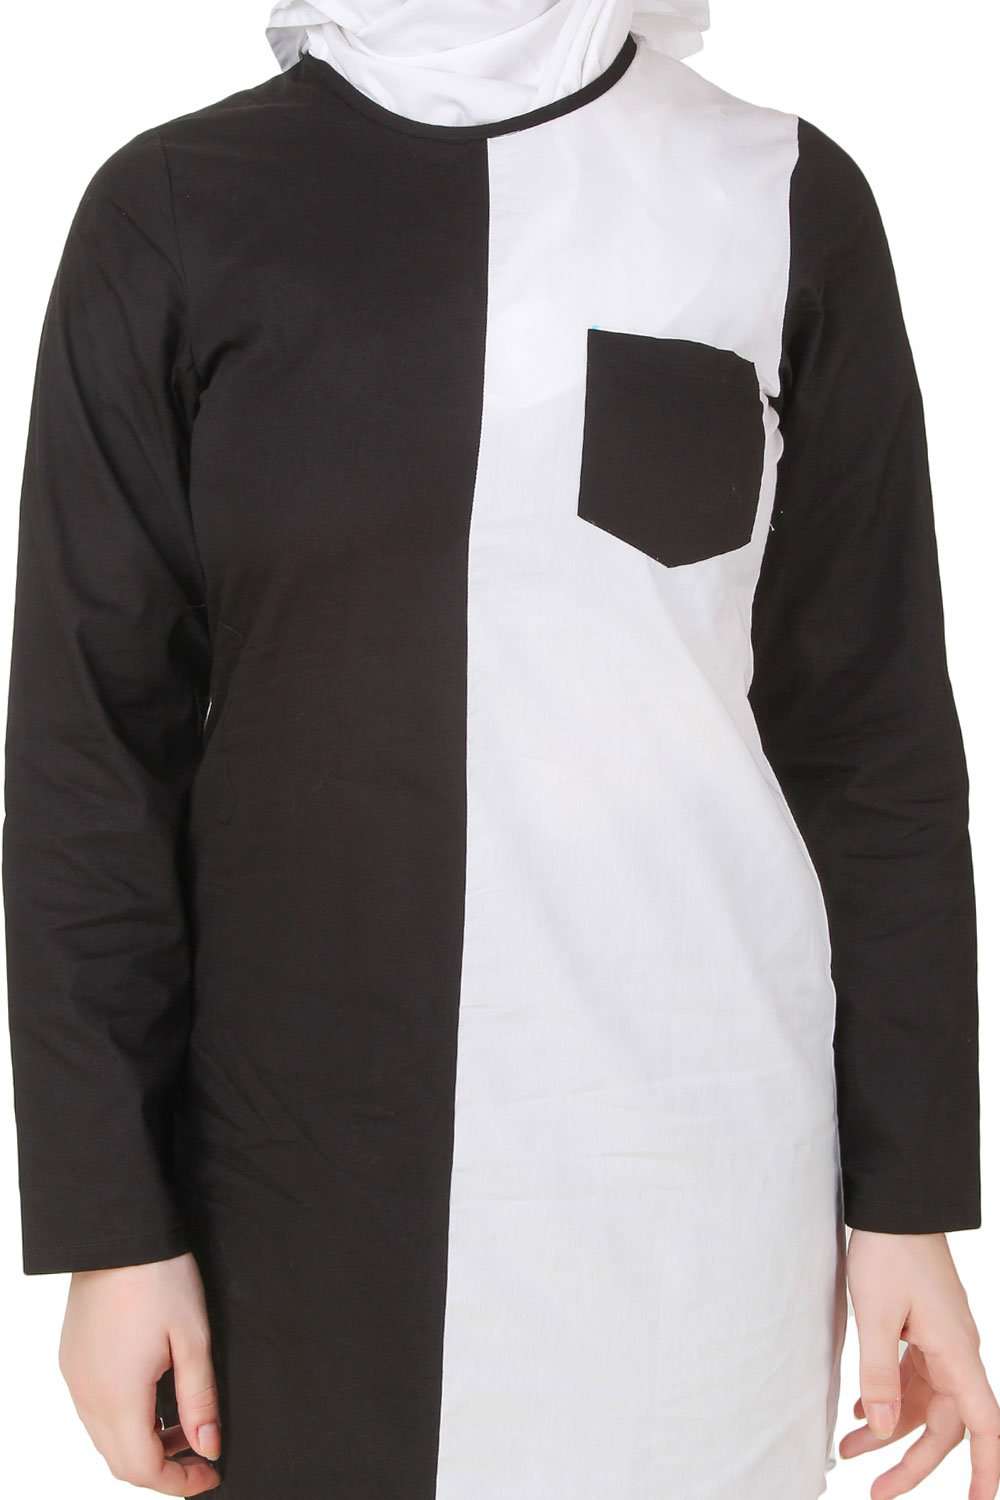 Nuzhah Black & White Cotton Tunic